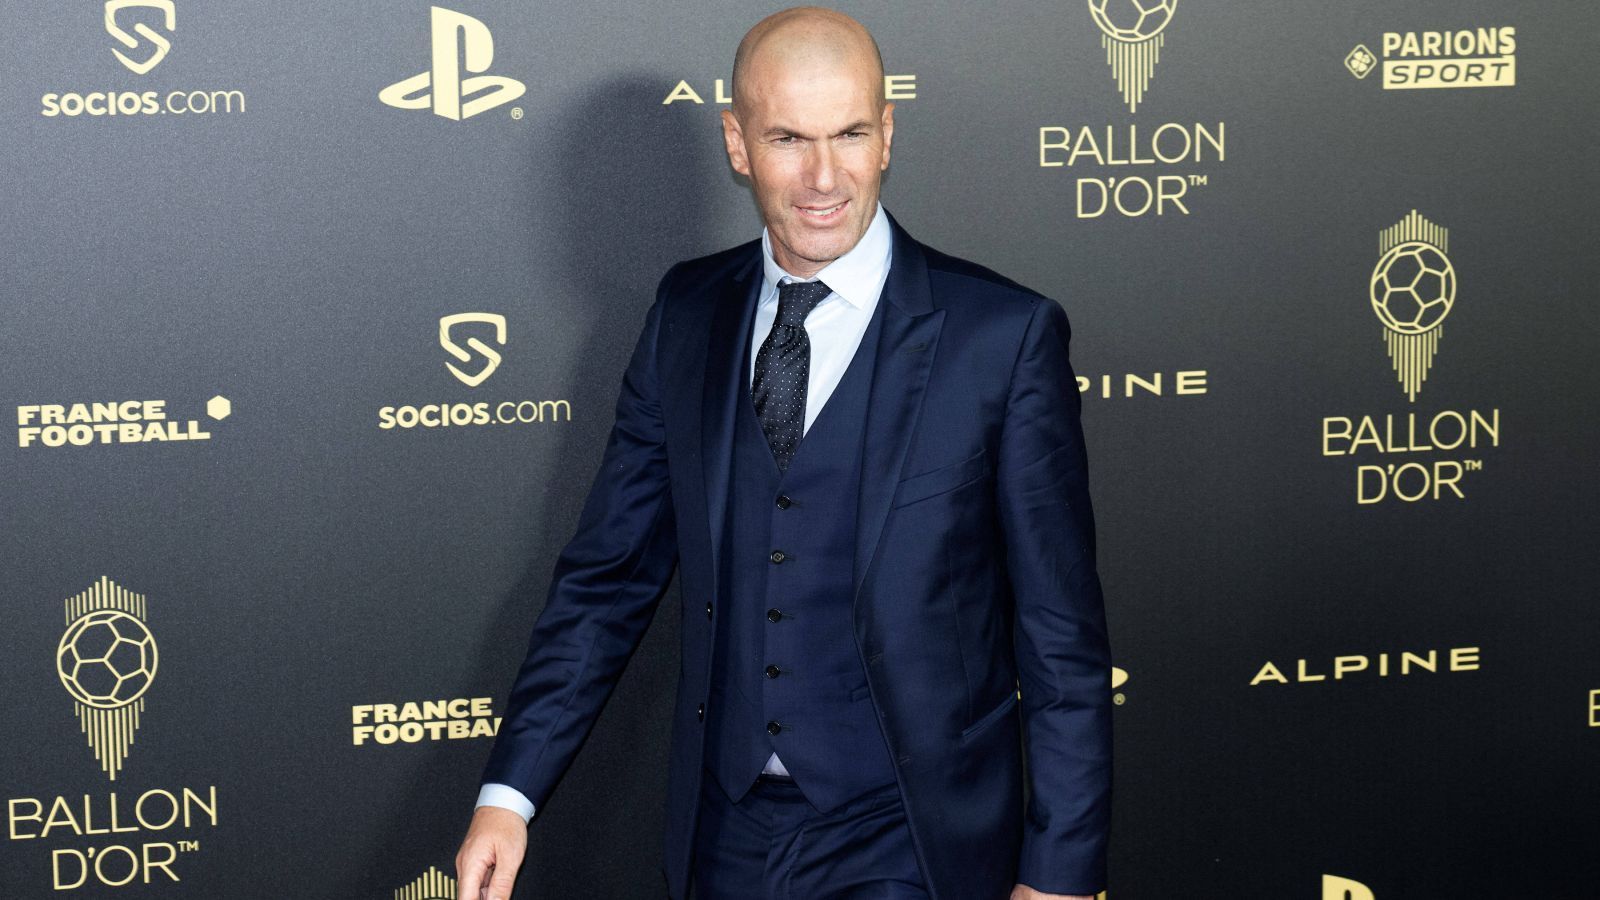 
                <strong>Zinedine Zidane</strong><br>
                ... der darf in dieser Liste natürlich auch nicht fehlen. Seit seinem Abgang bei Real ist er ohne Verein. Medienberichten zufolge spekulierte er auf den Posten als Nationaltrainer von Frankreich. Didier Deschamps verlängerte seinen Vertrag zuletzt bis 2026, das ist also eher keine Option.
              